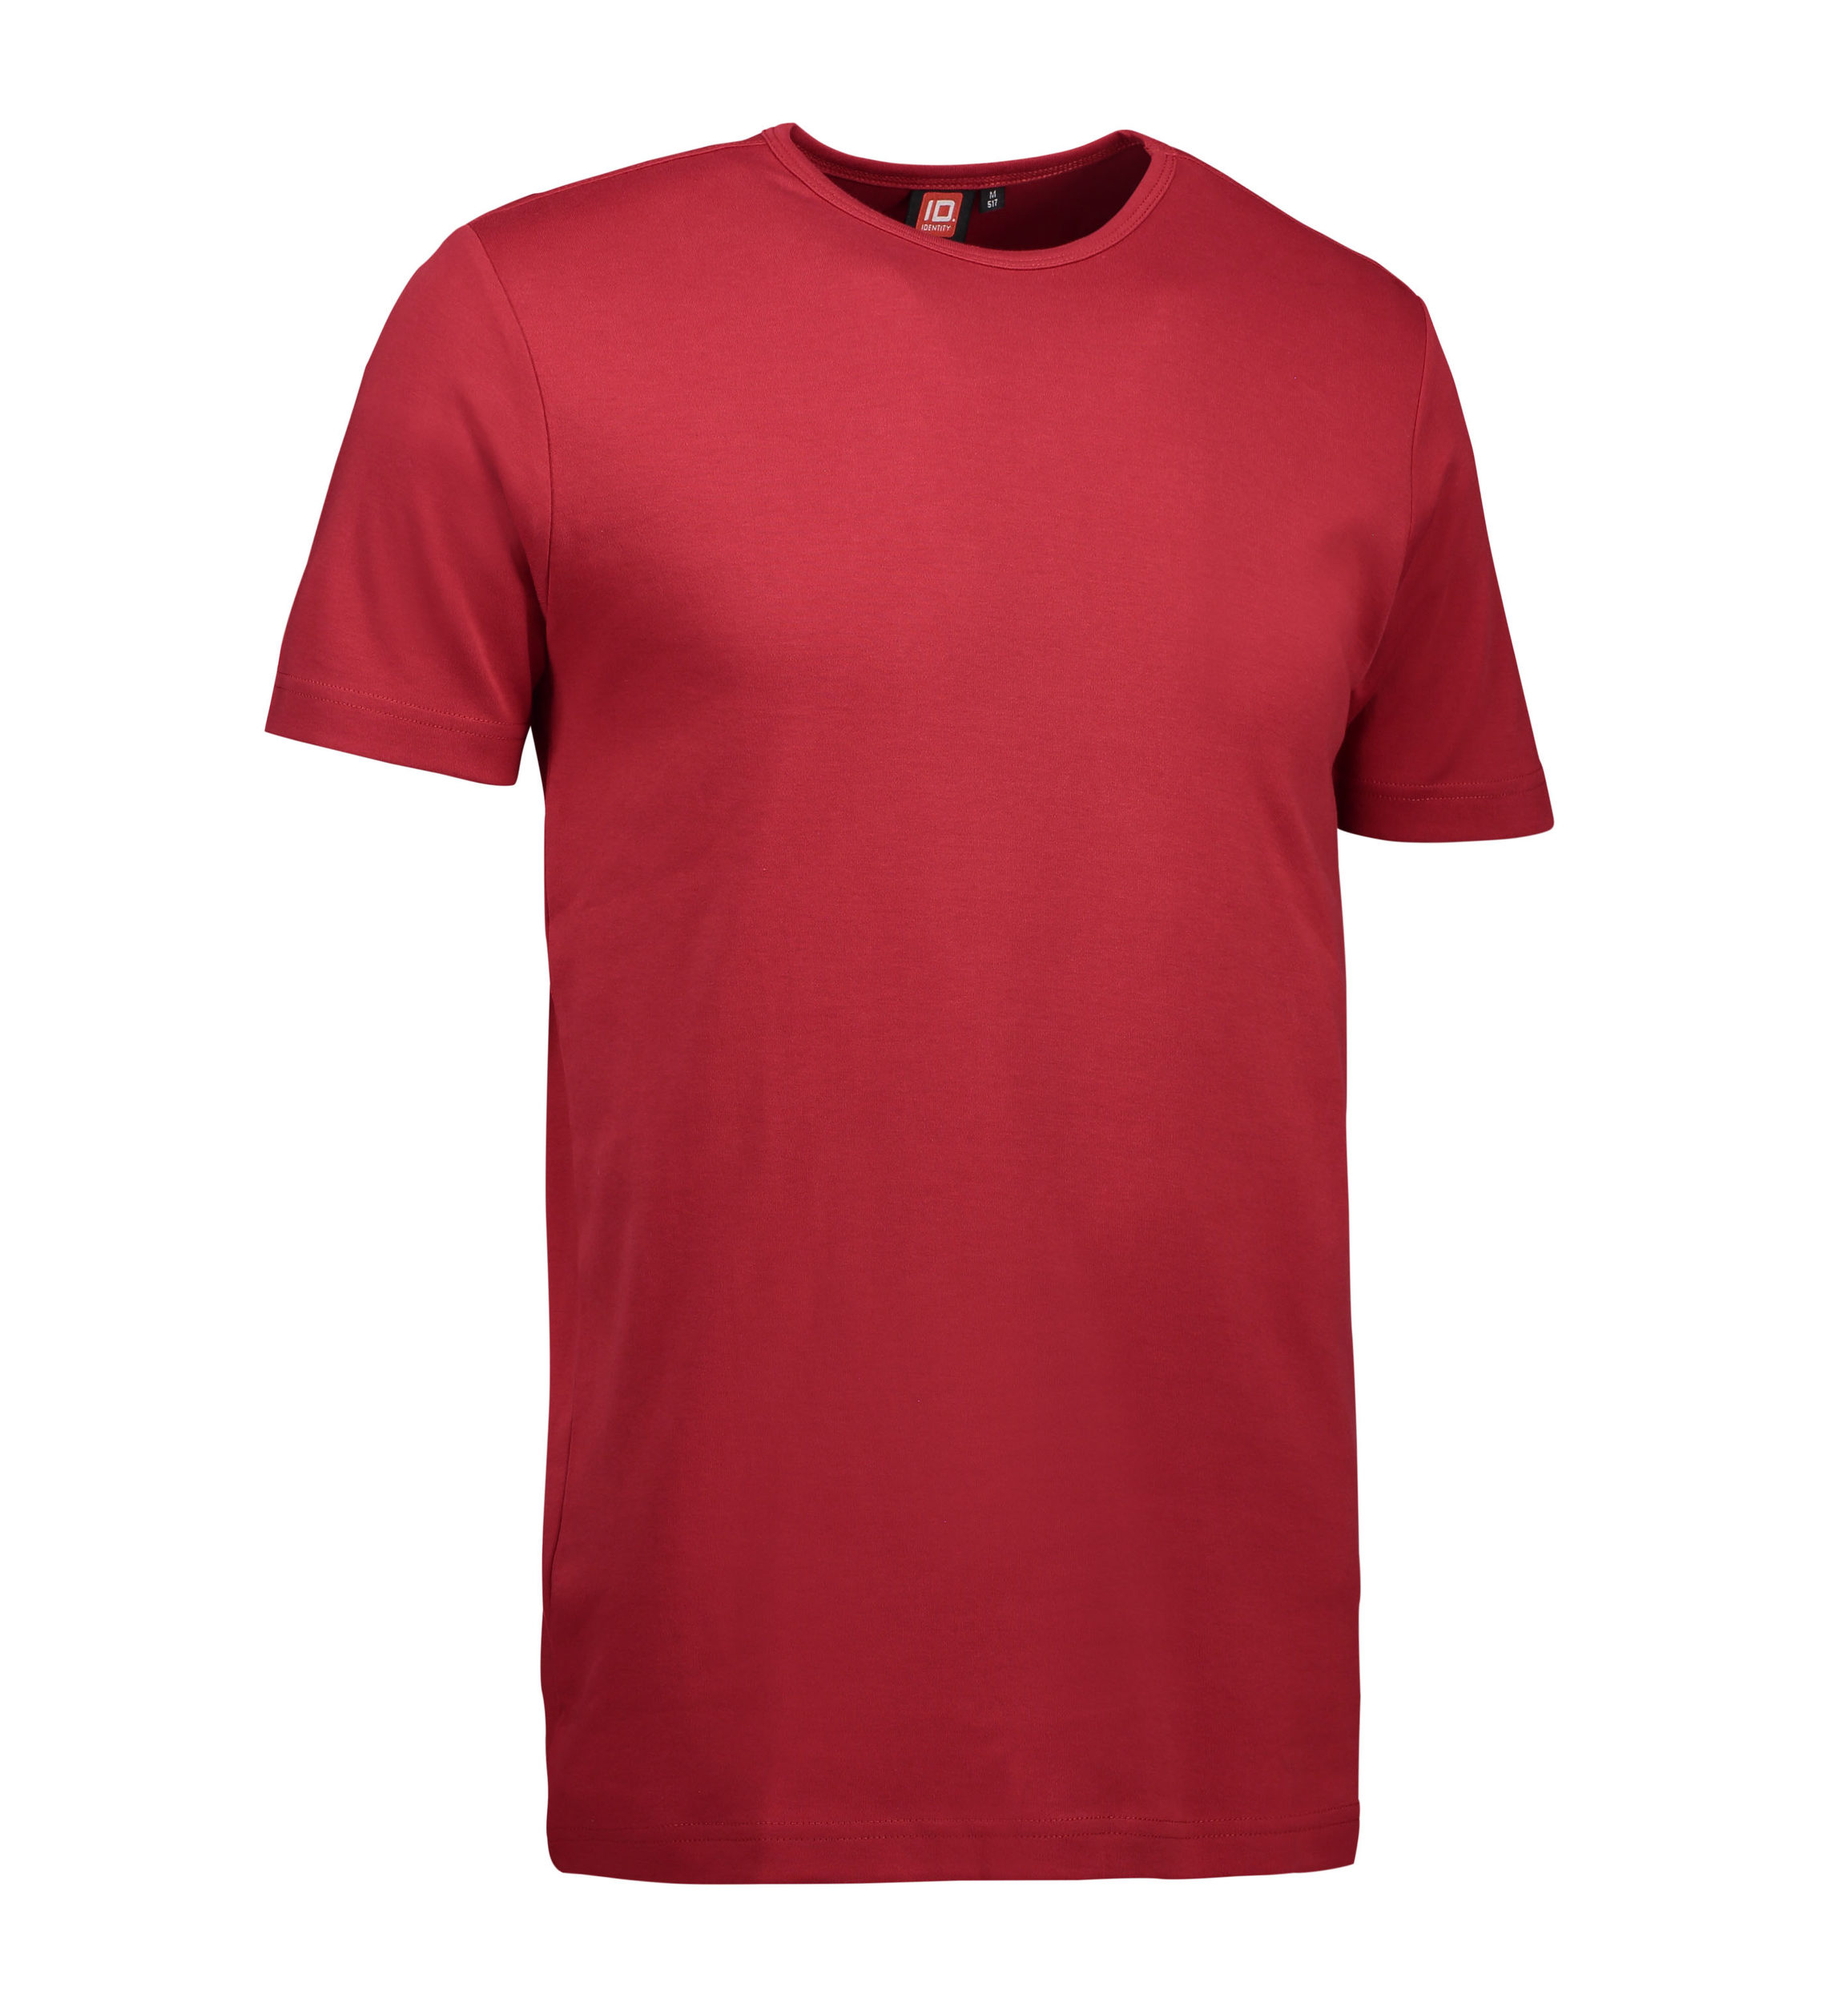 Billede af Rød t-shirt med rund hals til mænd - L hos Sygeplejebutikken.dk